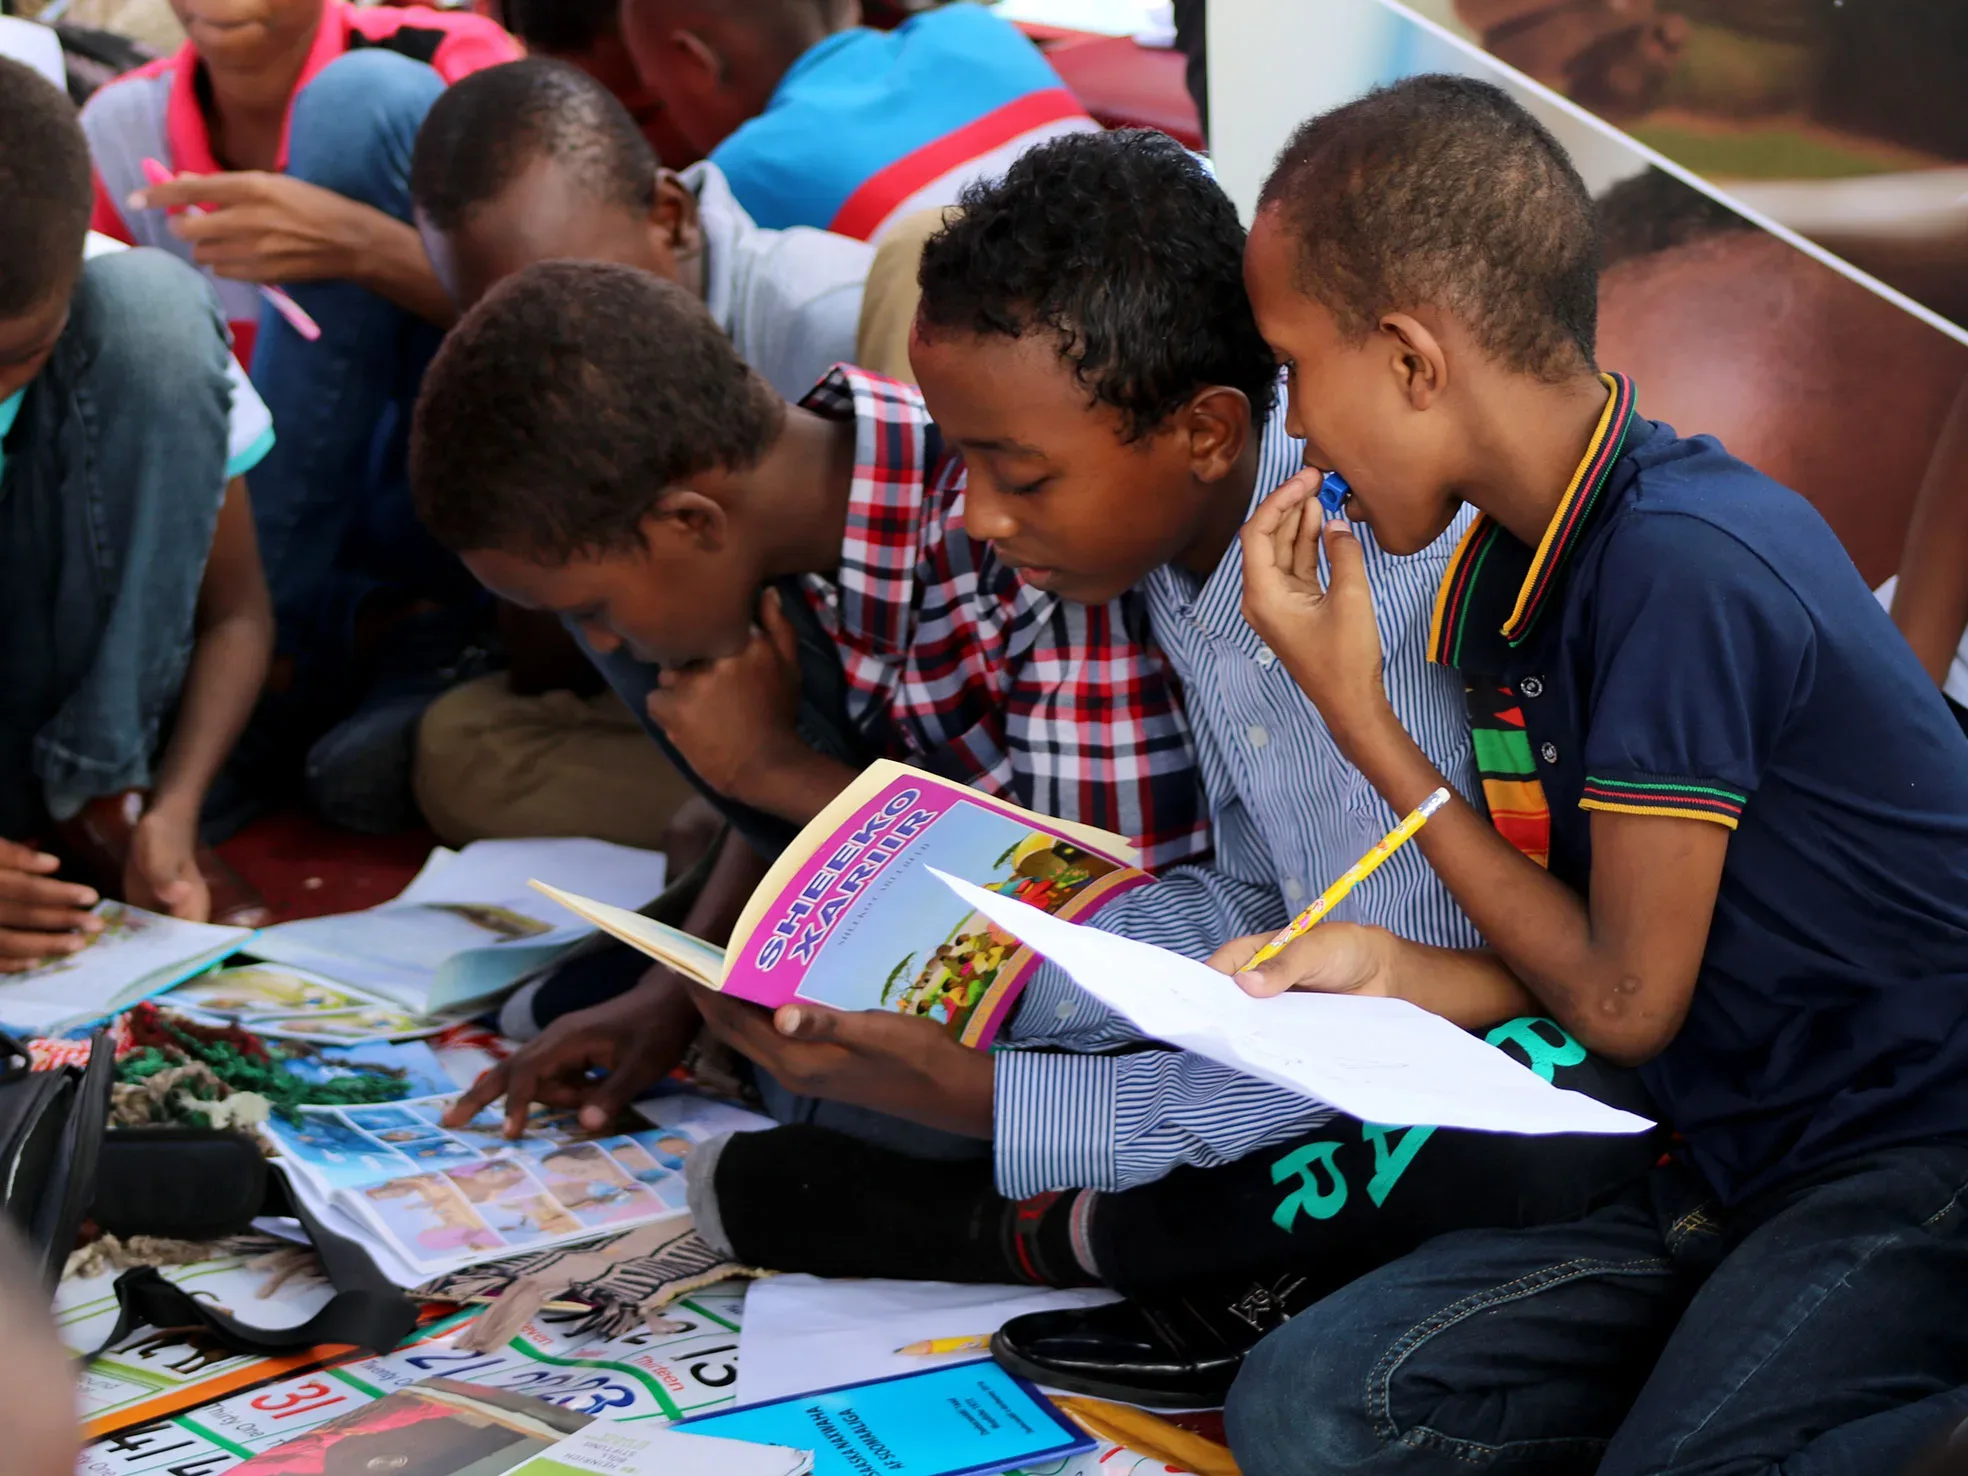 Refugee children studying books